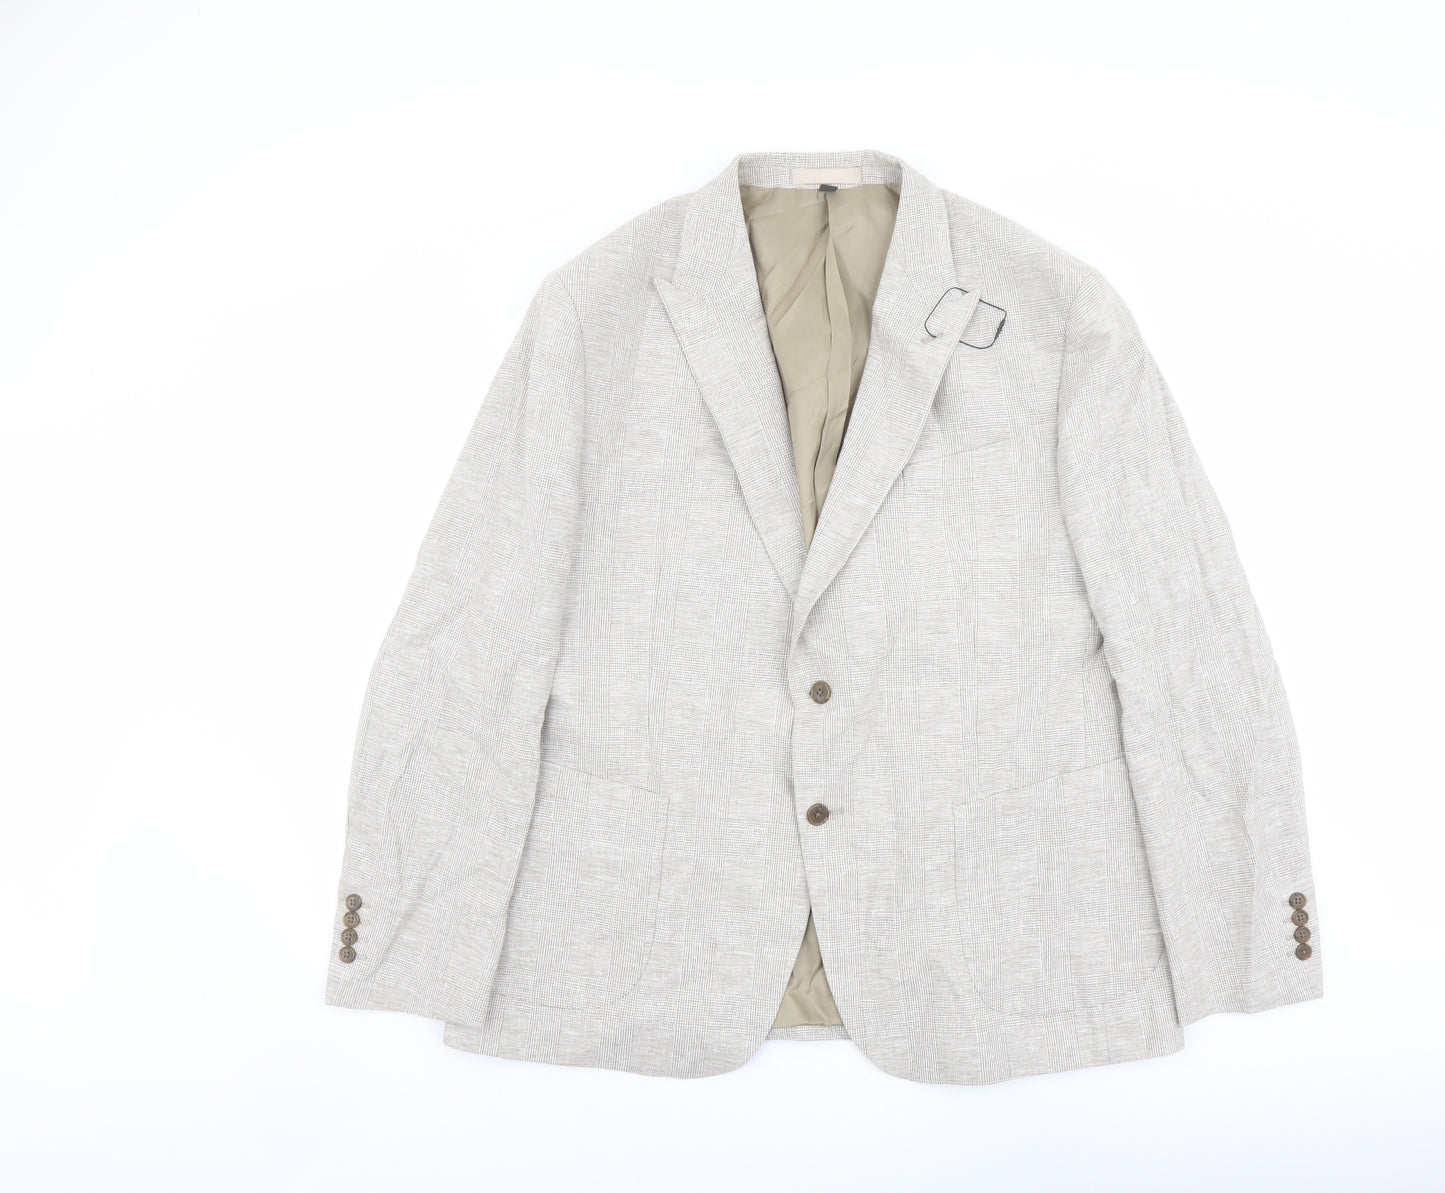 Marks and Spencer Mens Beige Polyester Jacket Suit Jacket Size 46 Regular